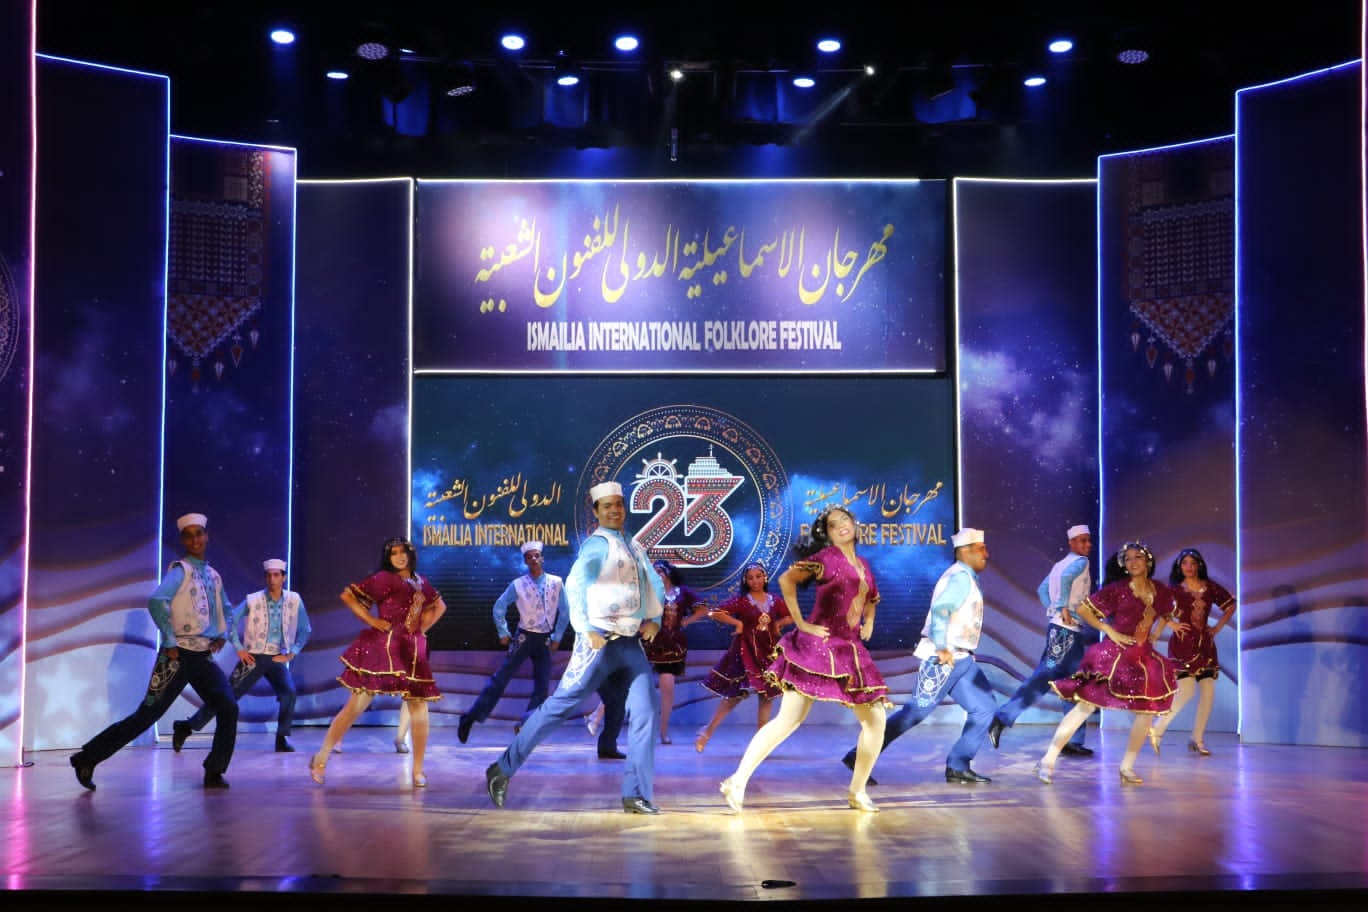 حفل افتتاح مهرجان الإسماعيلية الدولي للفنون الشعبية في نسخته الثالثة والعشرين ٢٠٢٣